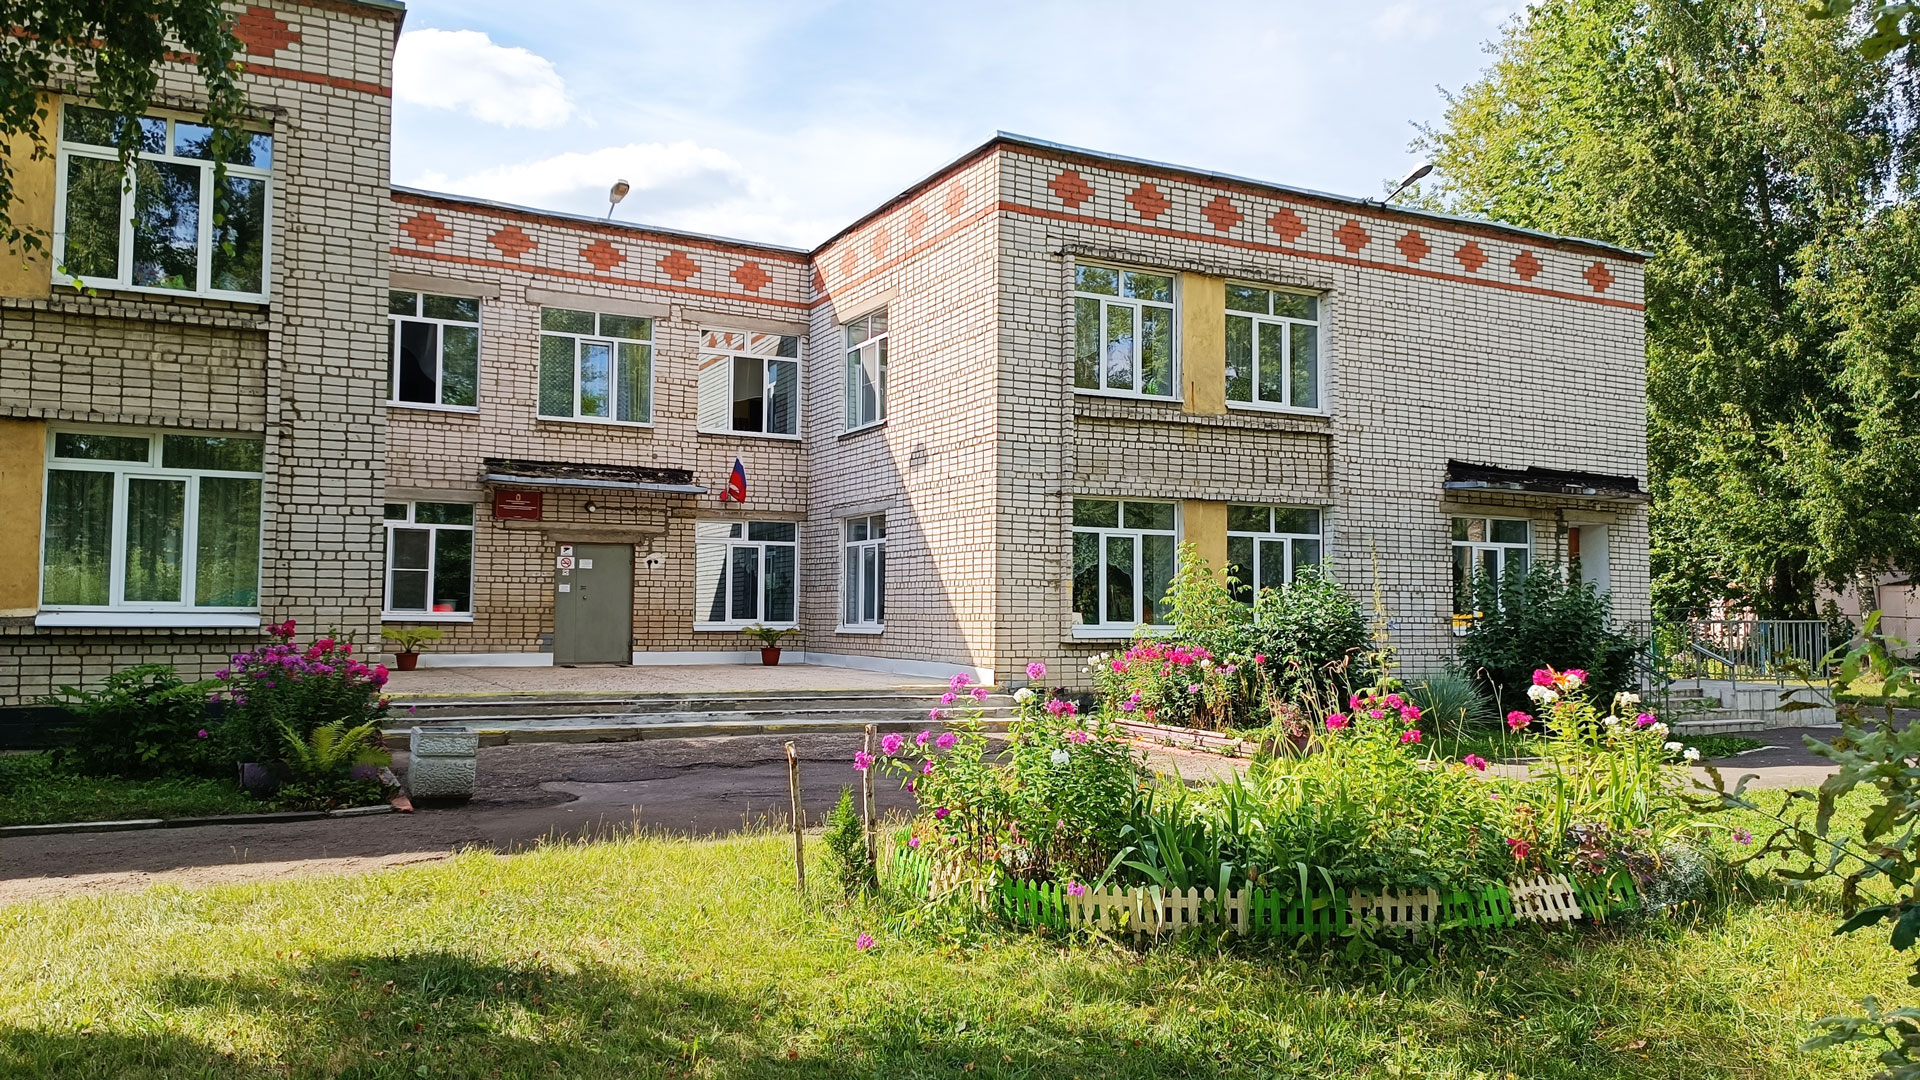 Начальная школа – детский сад 85 Ярославль: общий вид здания (детсад).